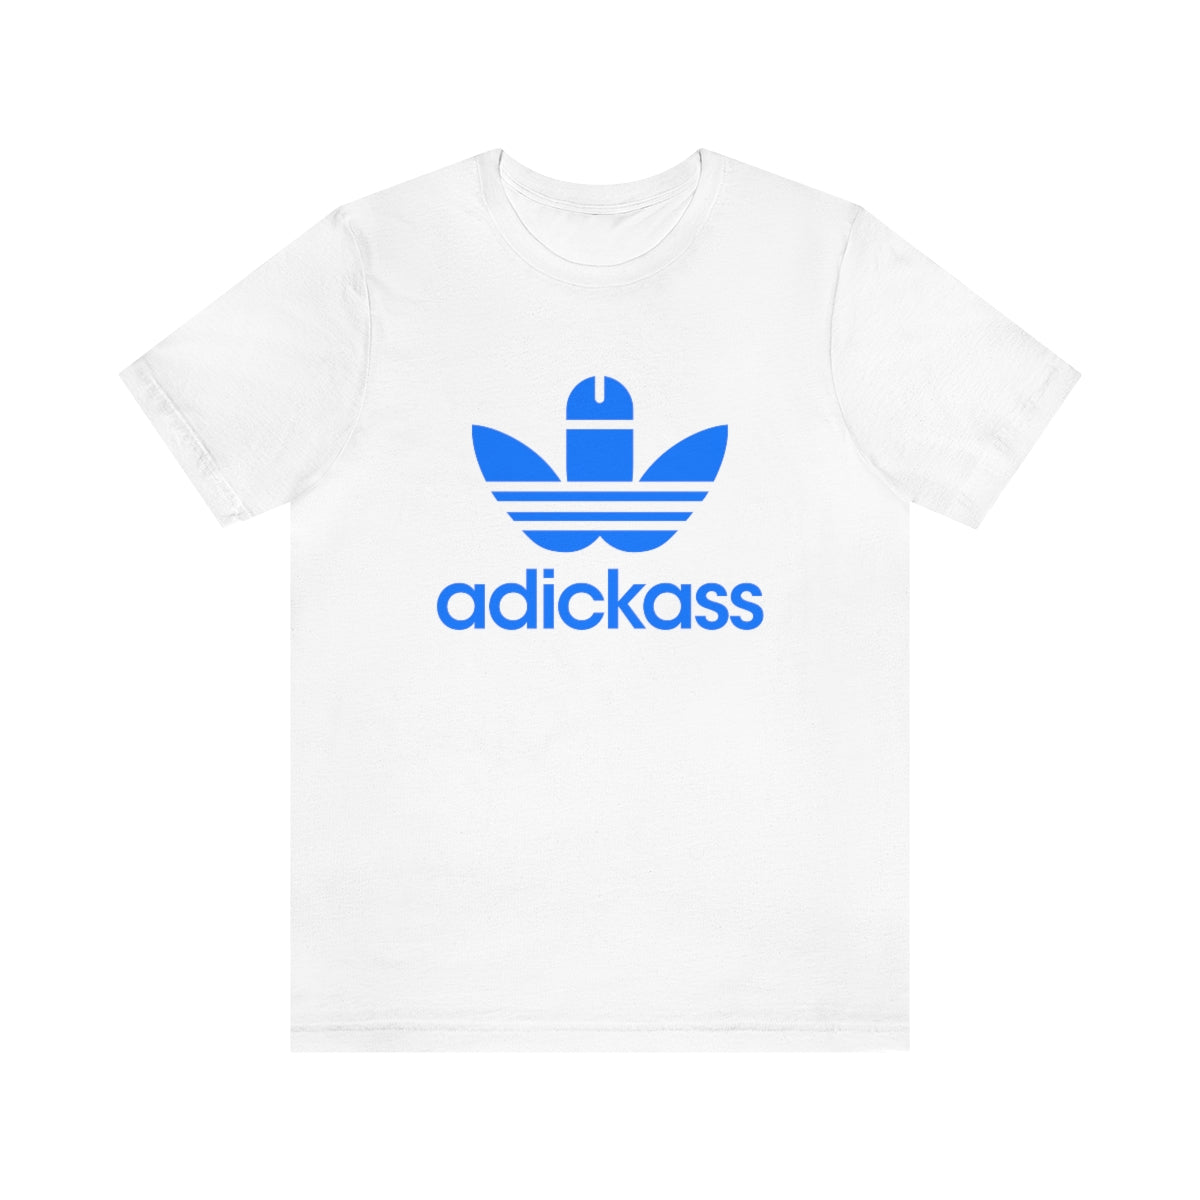 Adickass T-Shirt